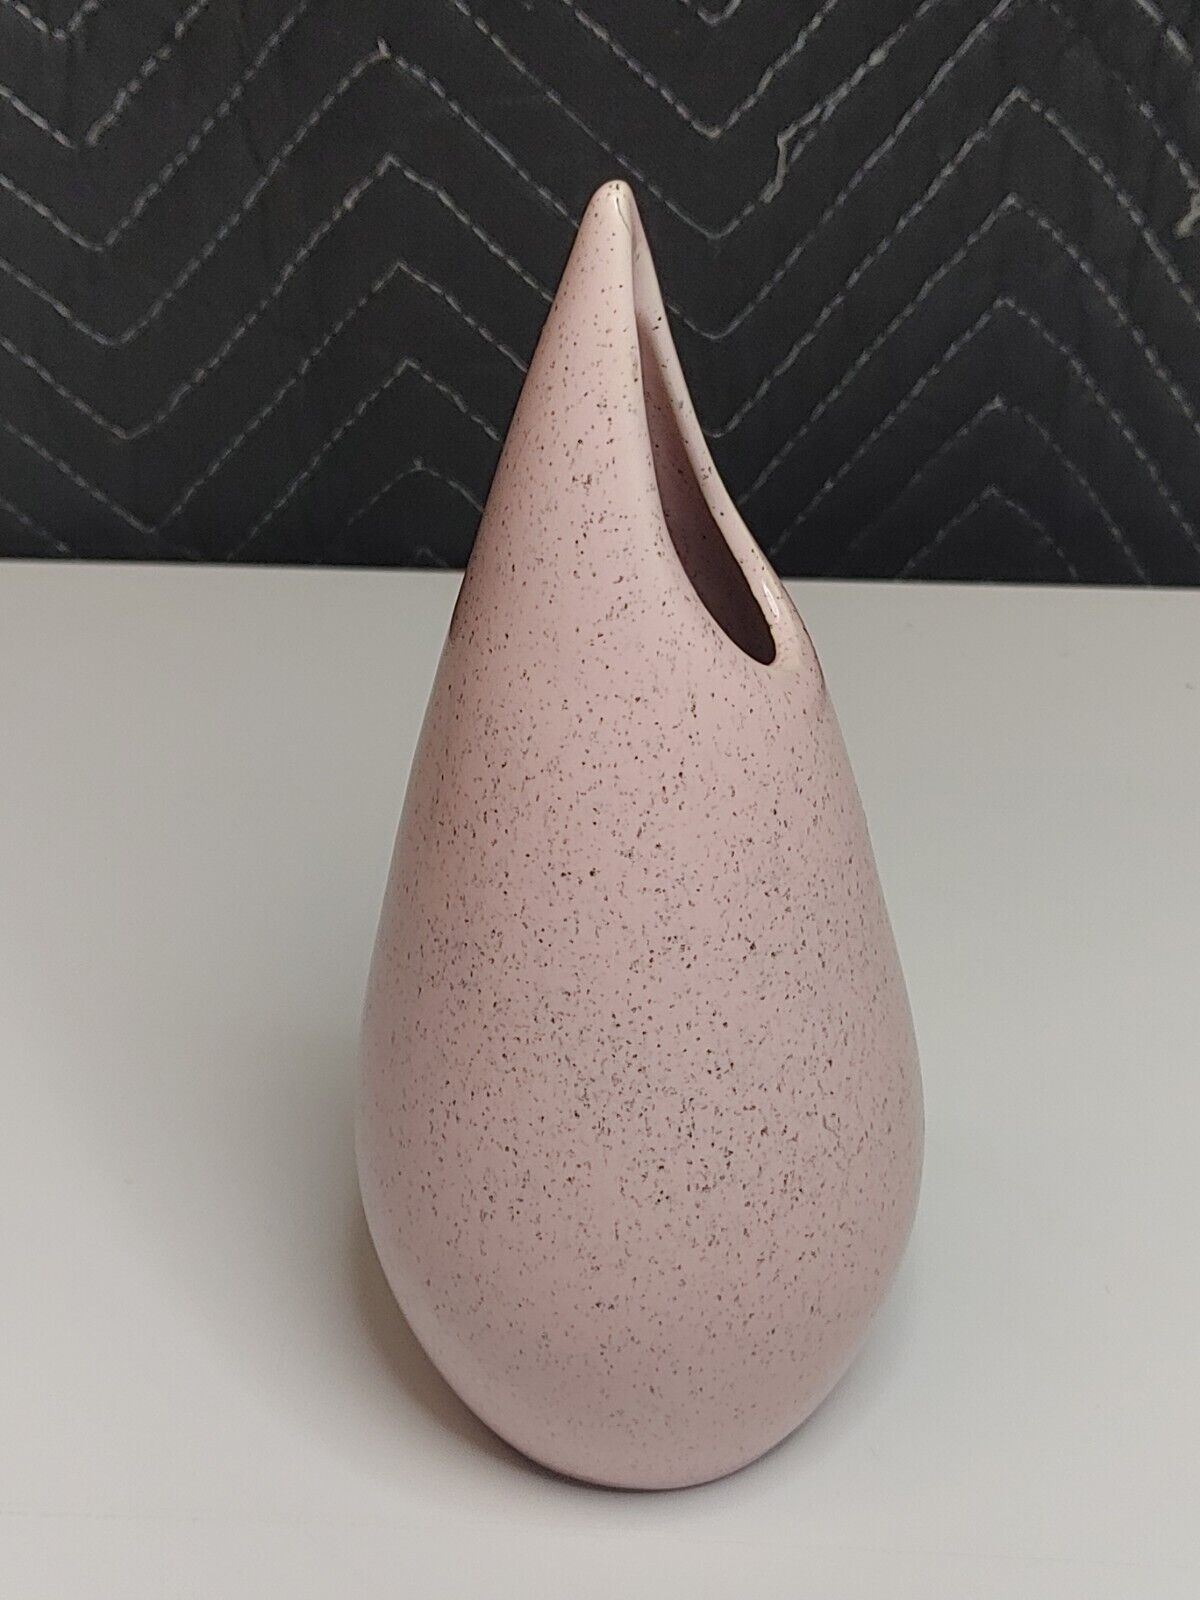 Bauer Pottery Rose Flower Vase Pink Speckled Midcentury MCM Vintage 50s 1950s